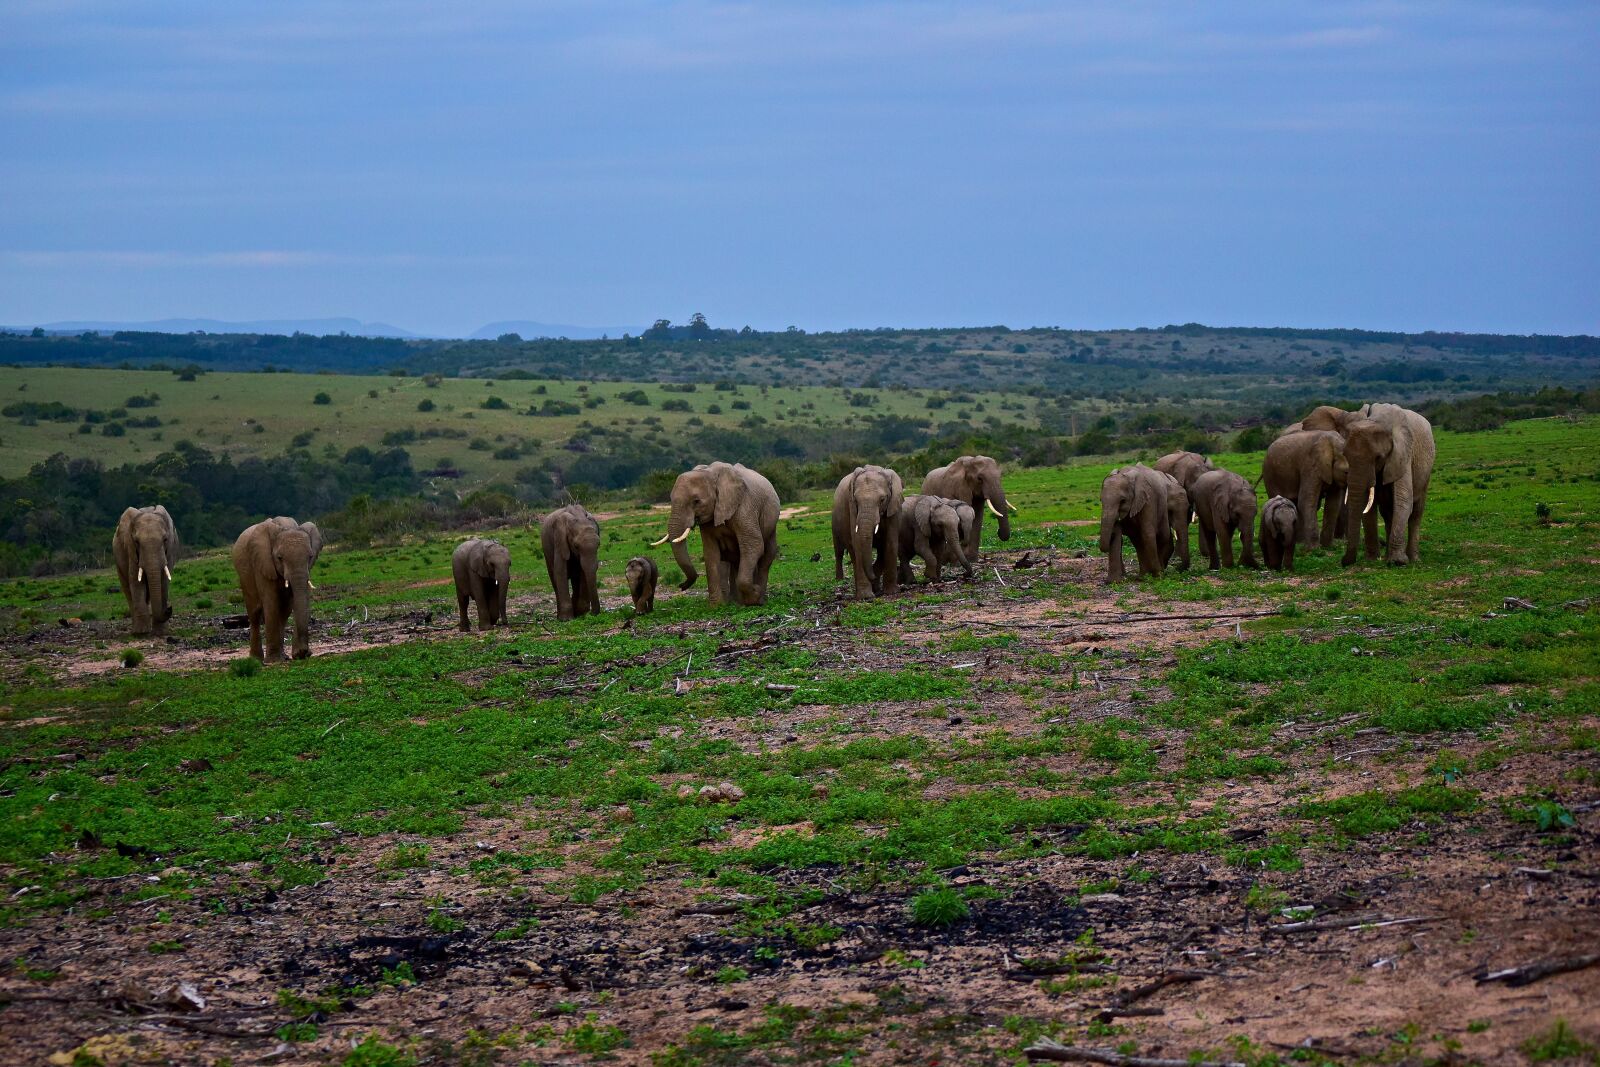 Nikon AF-S DX Nikkor 55-200mm F4-5.6G VR sample photo. Elephants, herd, hills photography